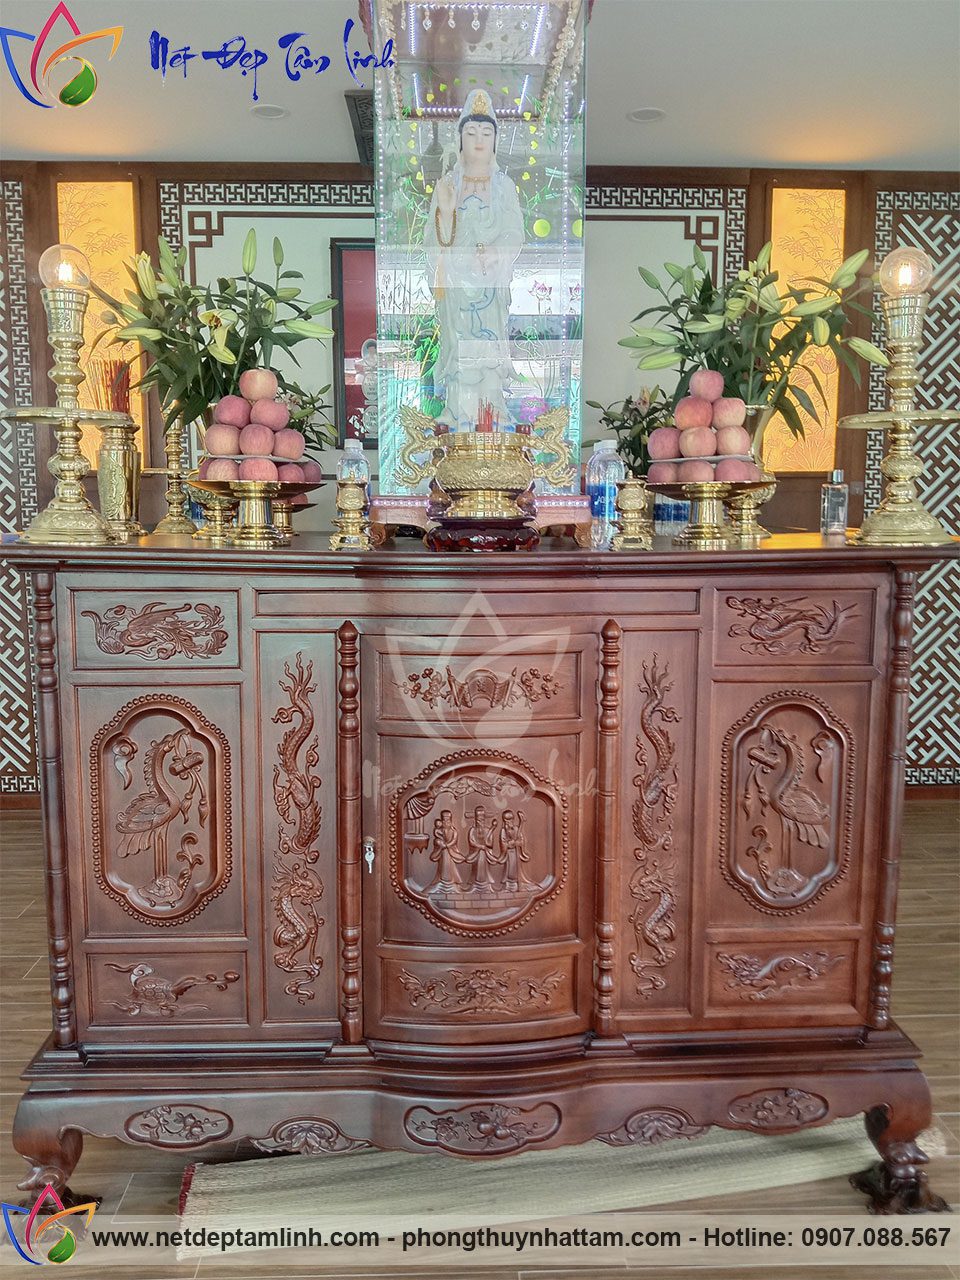 Tủ thờ Phật tại gia phải trang nghiêm và thanh tịnh